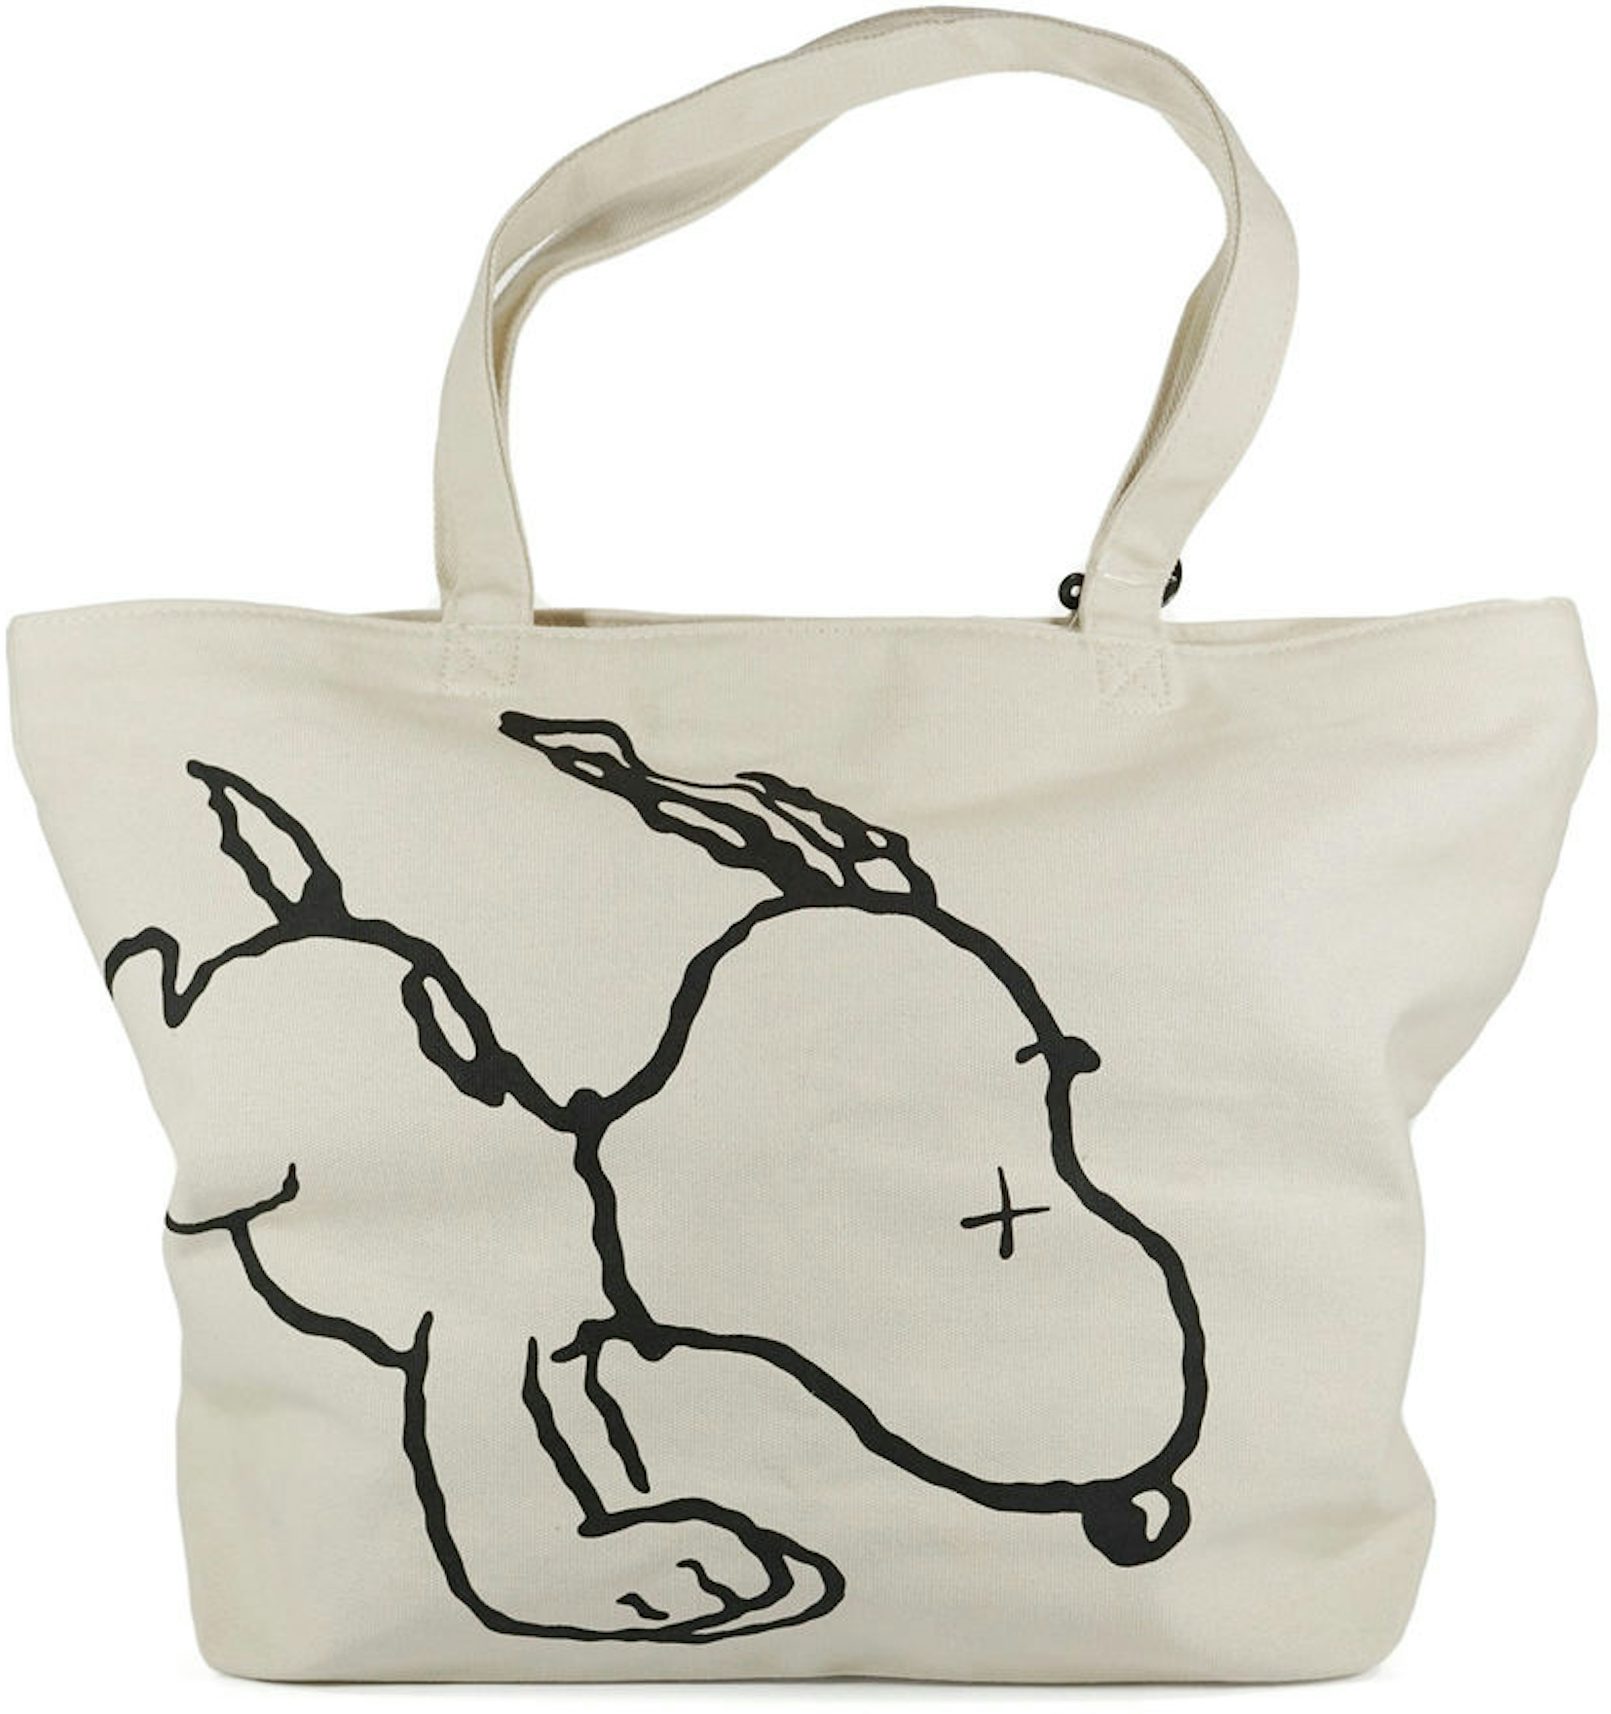 Goyard Is Releasing Exclusive Snoopy Print Bags